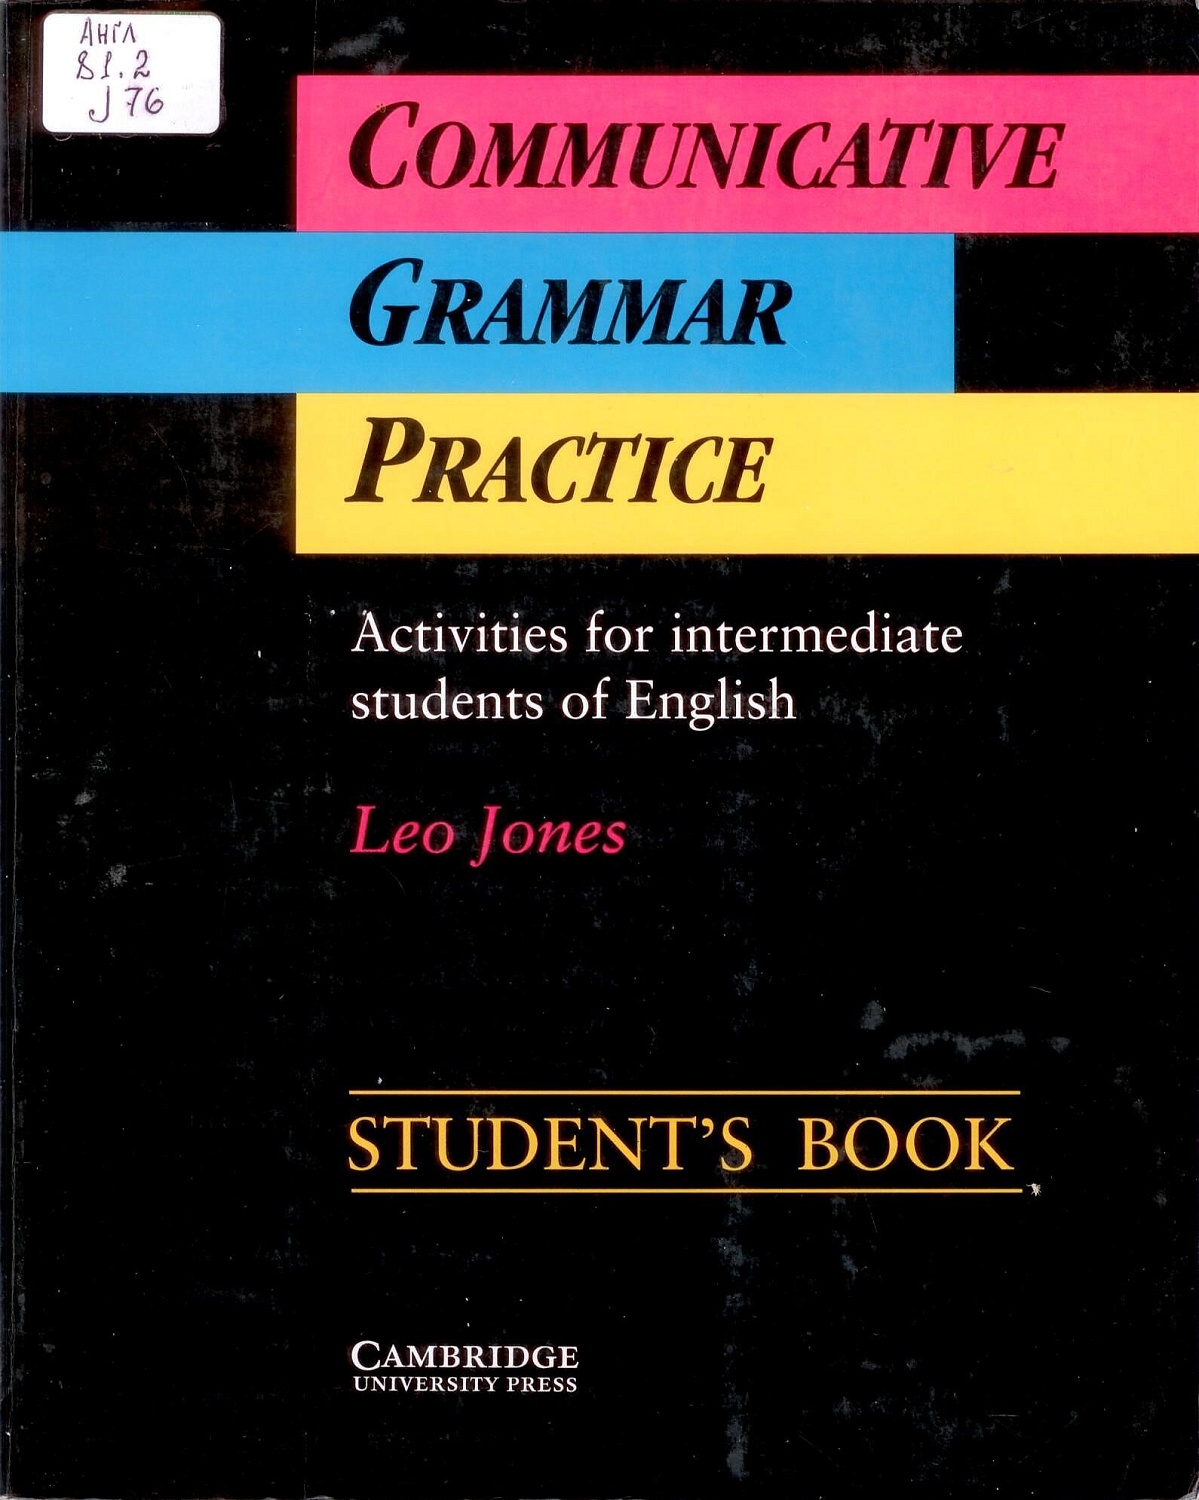 Англ 81.2  J 76 Communicative Grammar Practice: Activities for intermediate students of English: Student’s book / Jones, Leo. – Cambridge: Cambridge University Press, 1992. – 105 p.